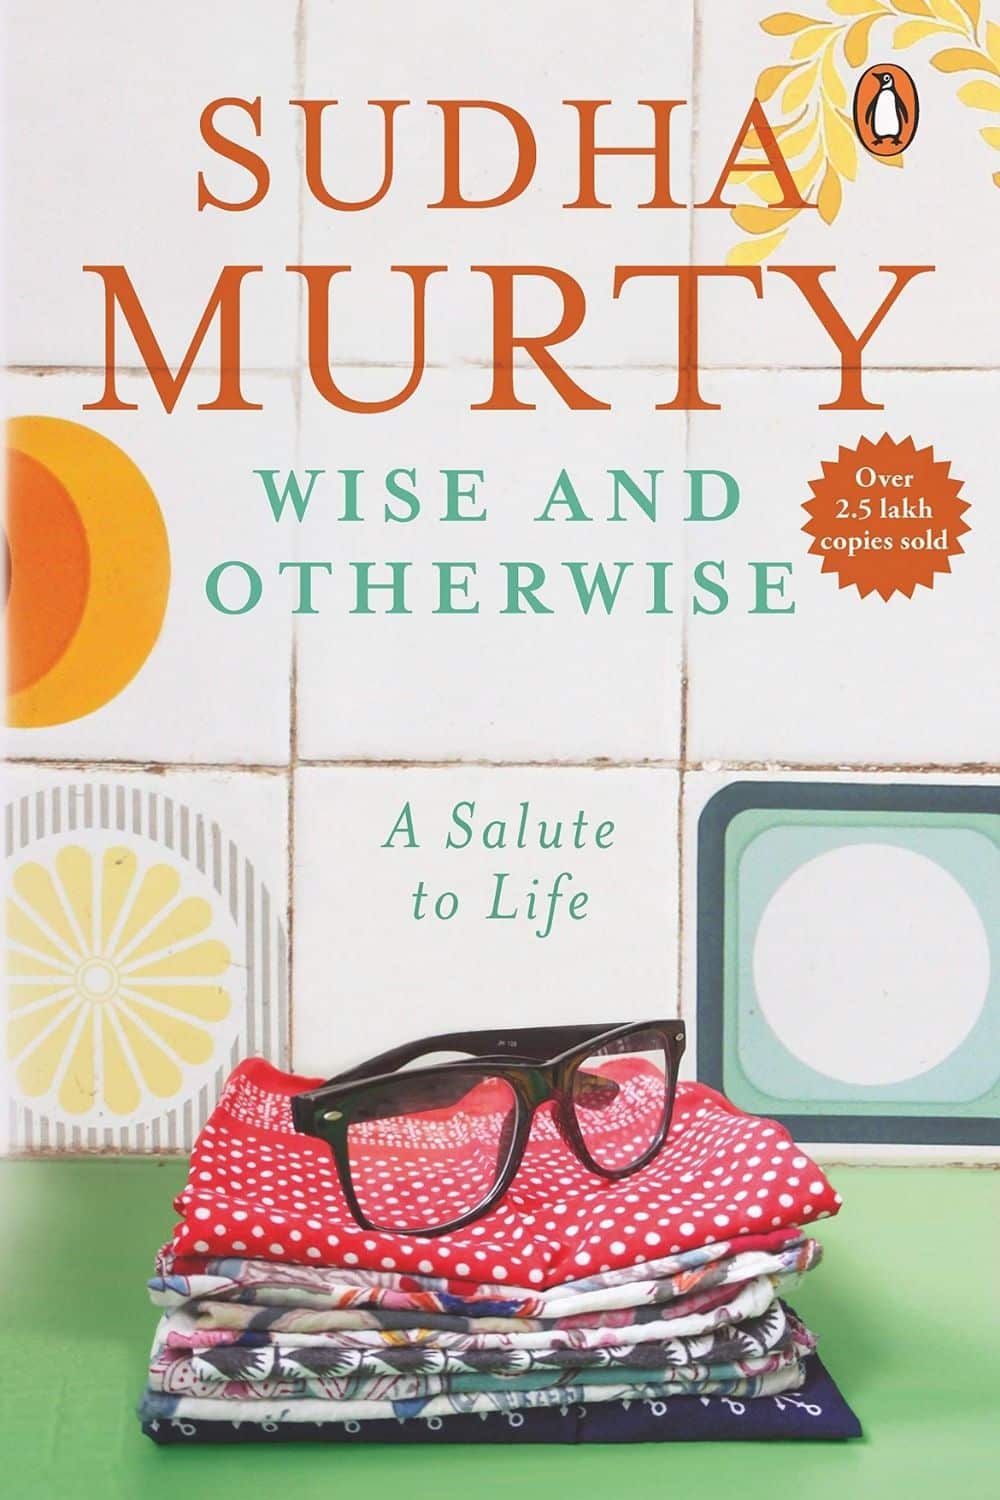 Sudha Murty 的 10 部最佳书籍